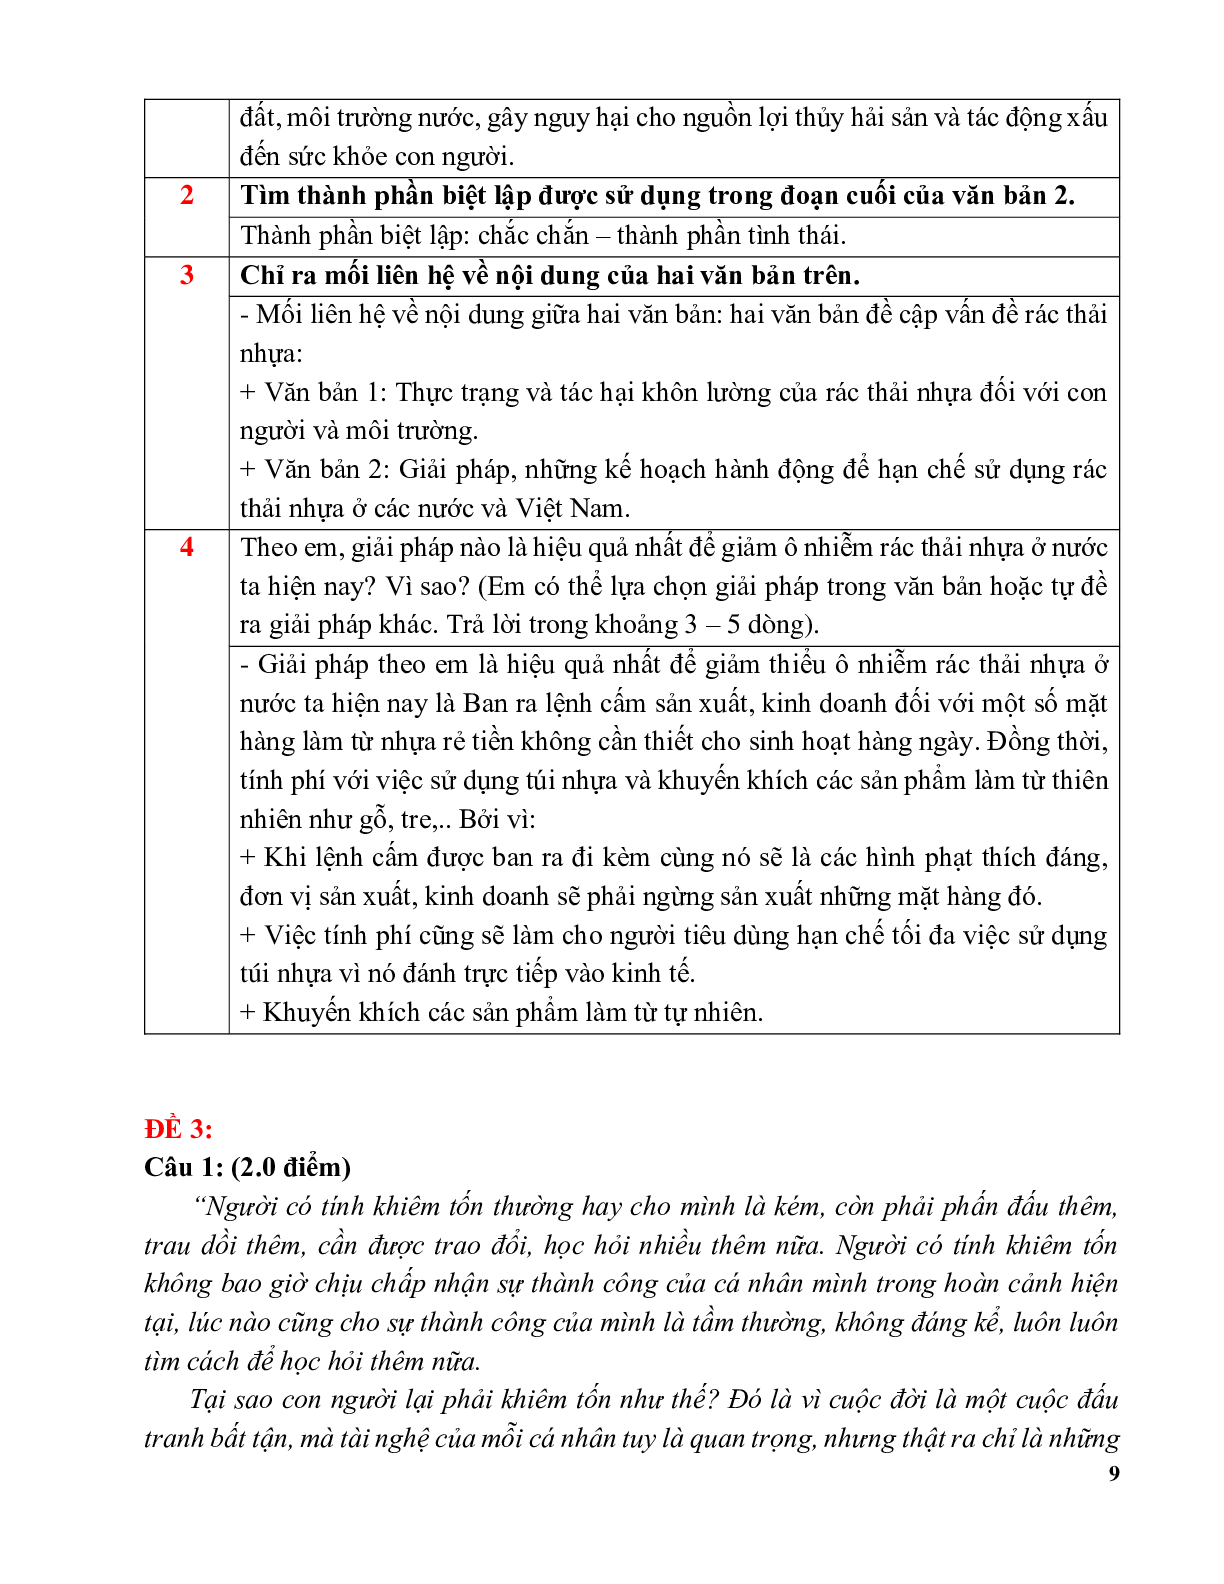 81 bộ đề đọc hiểu môn ngữ văn lớp 9 (trang 9)